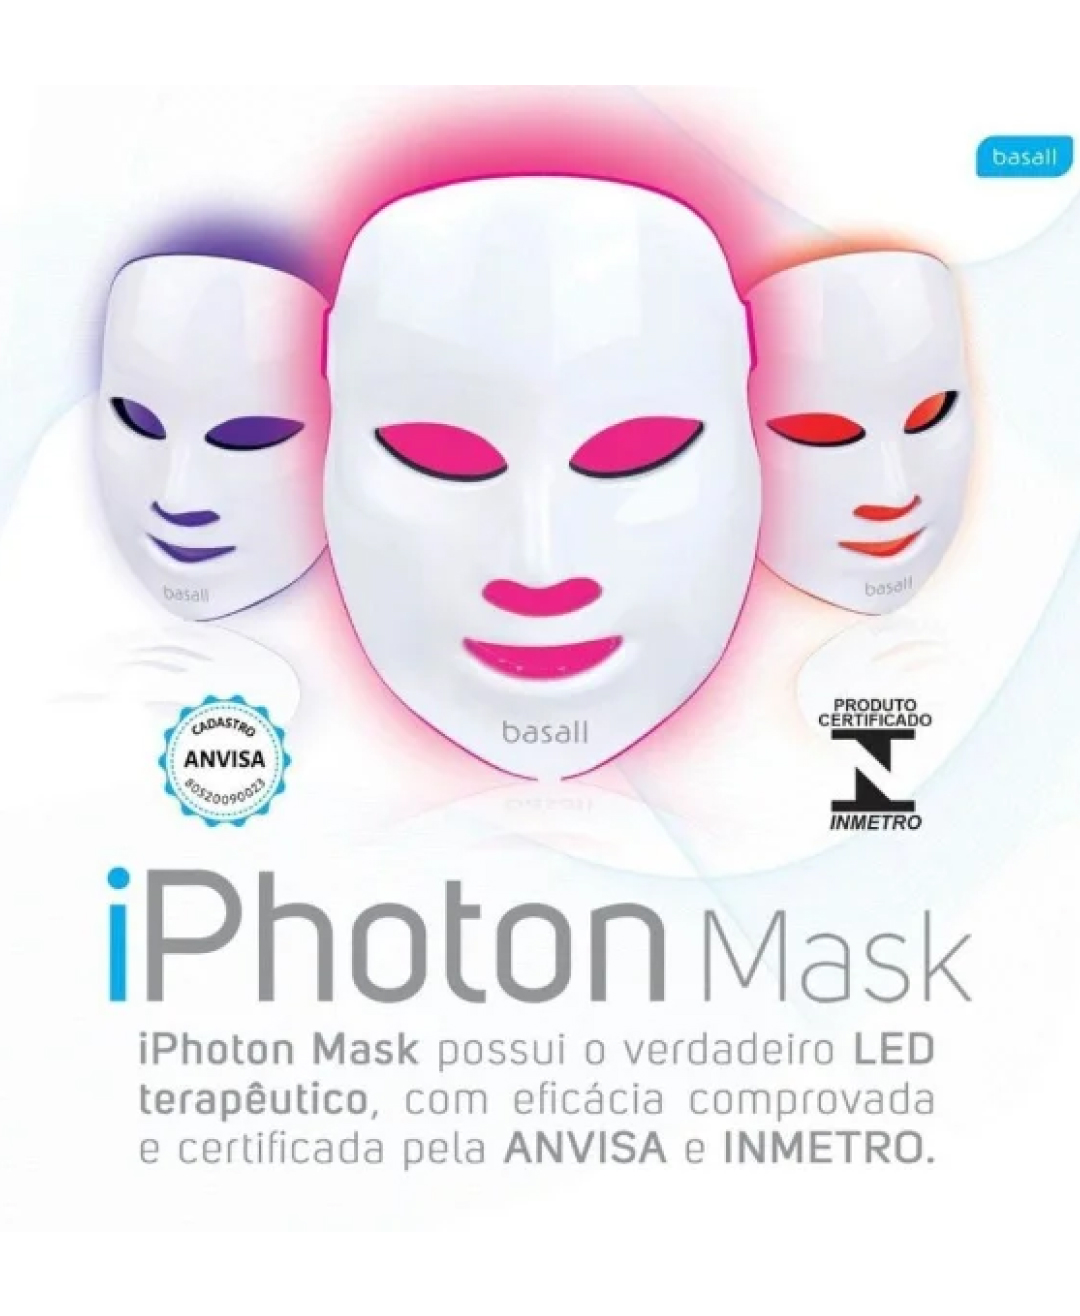 Iphoton Mask